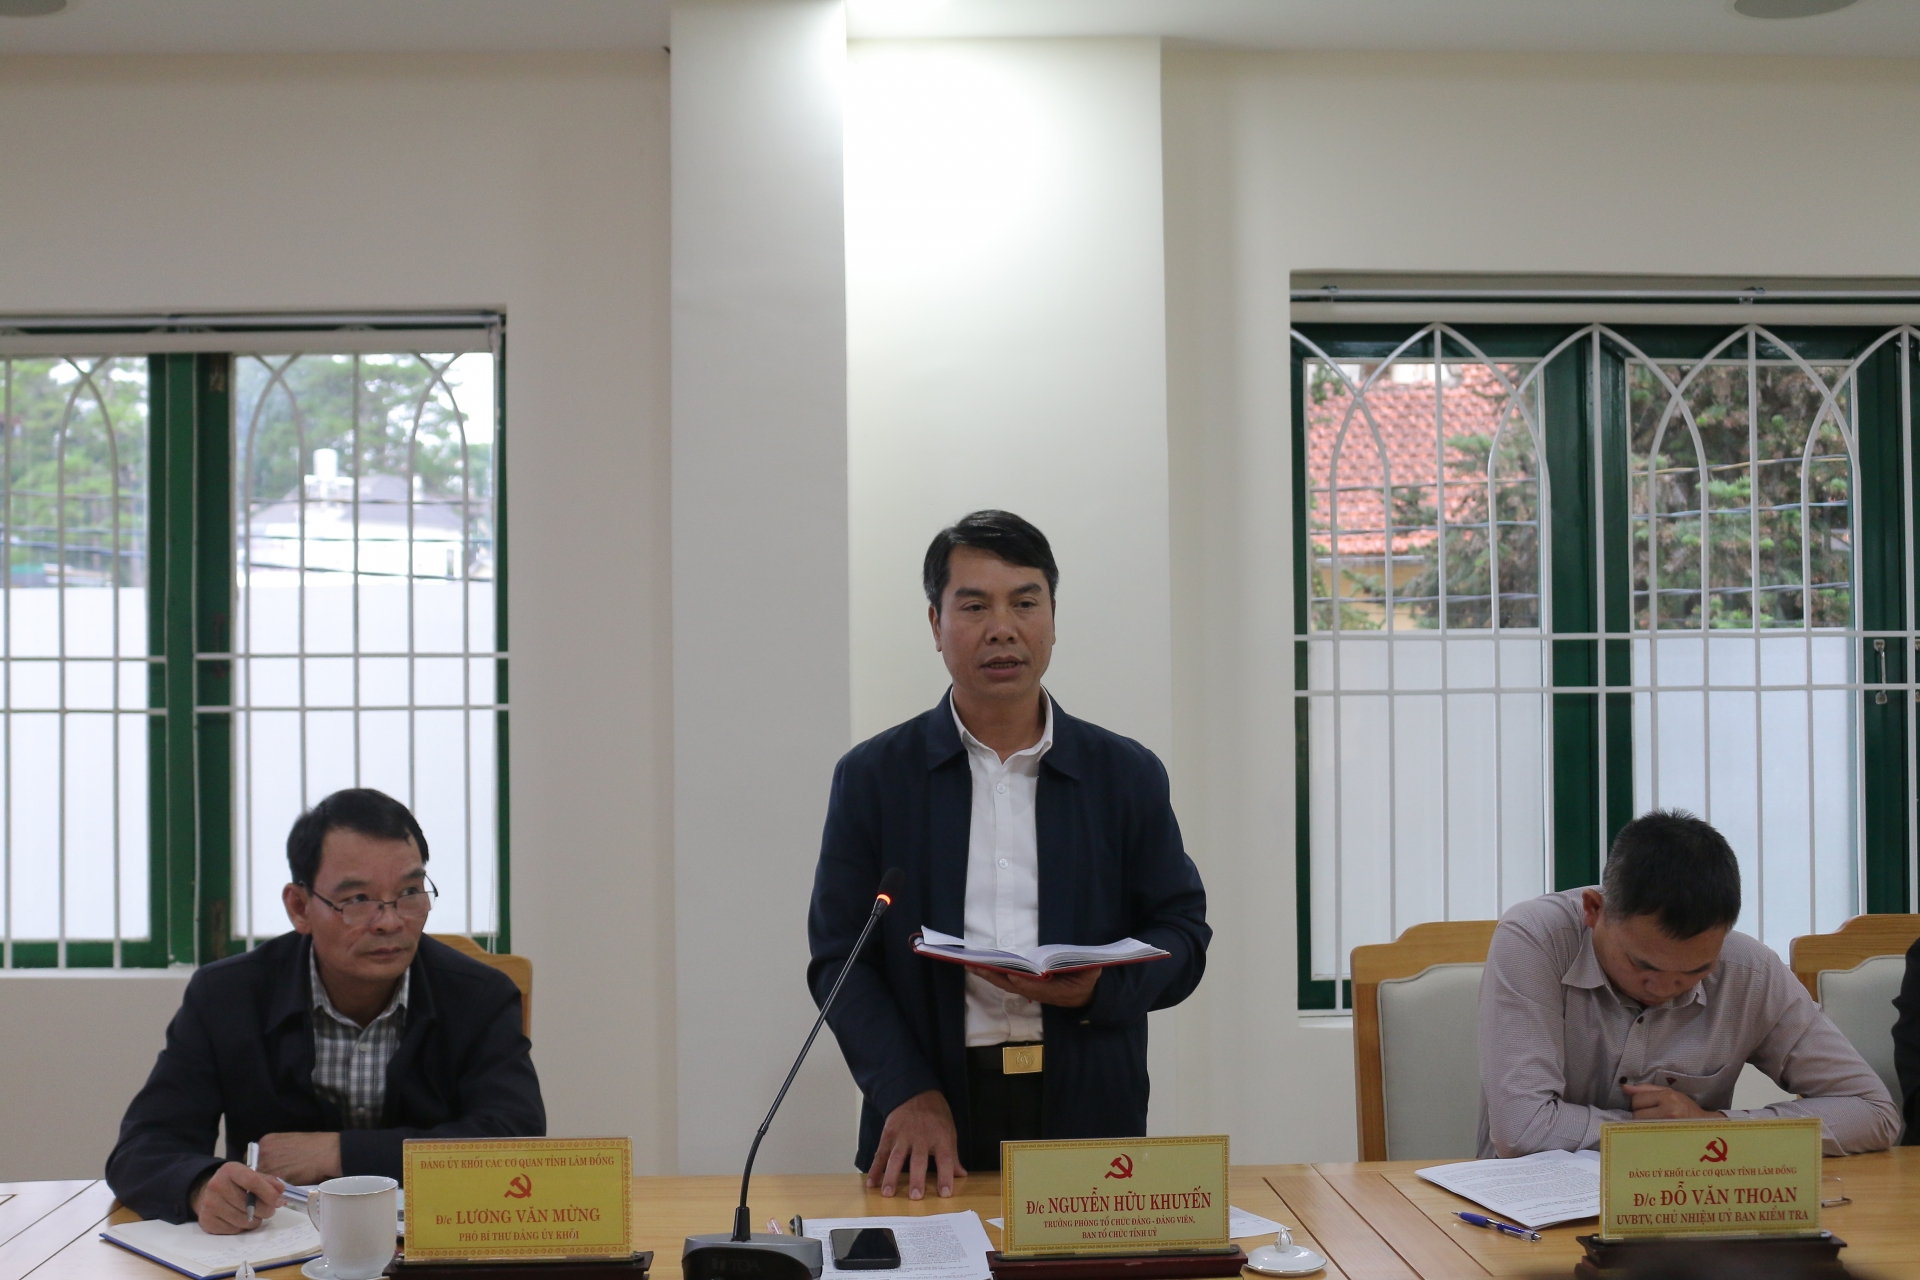 đồng chí Nguyễn Hữu Khuyến – Trưởng phòng Tổ chức Đảng – Đảng viên, Ban Tổ chức Tỉnh ủy